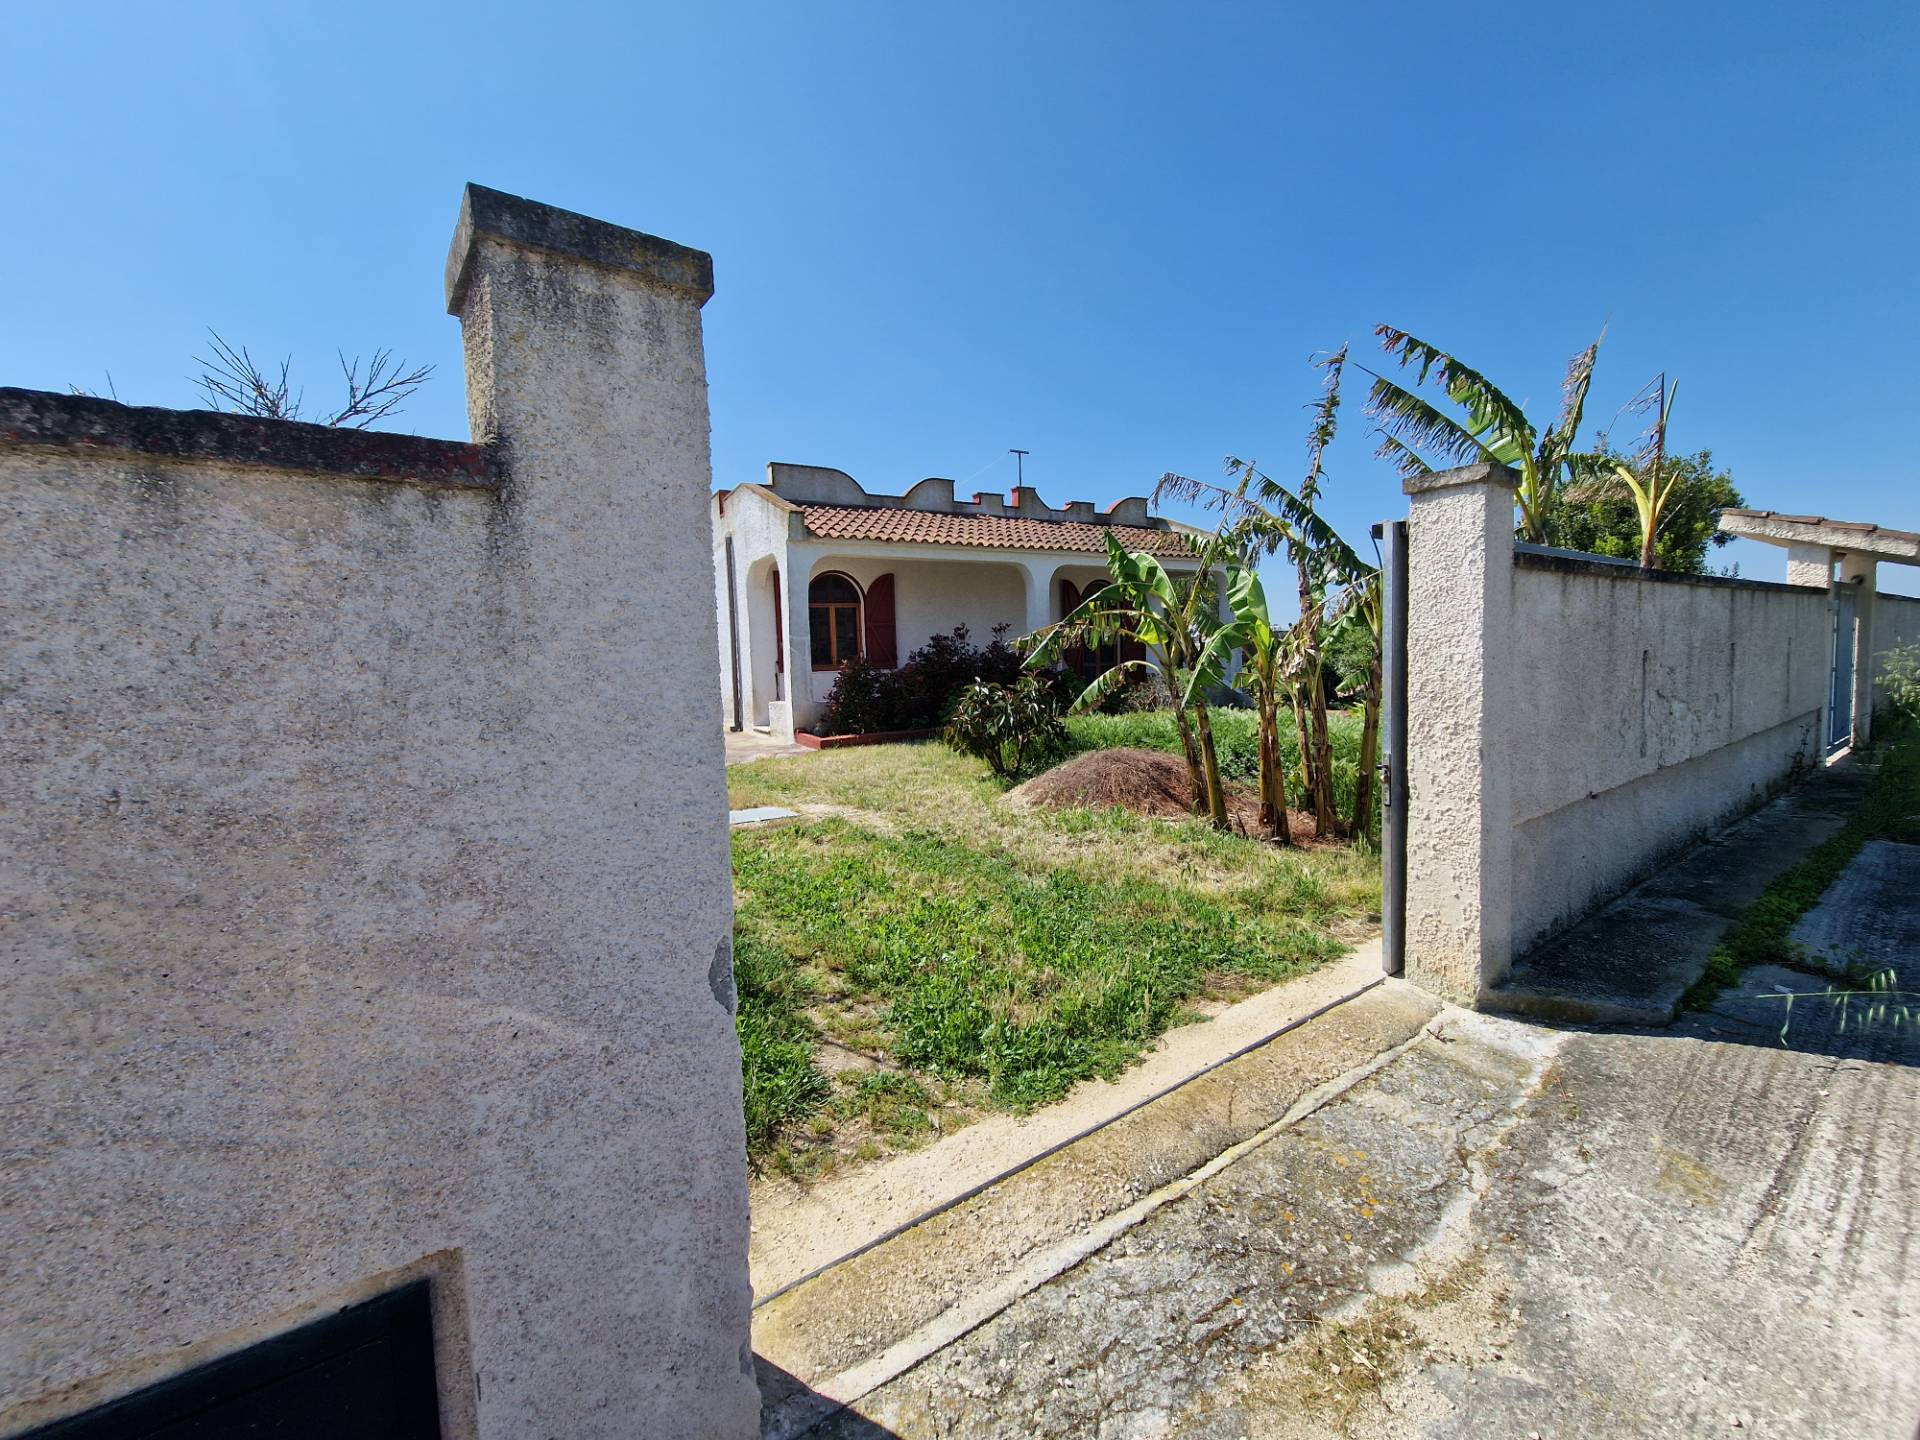 Villa in vendita a San Pietro Vernotico, 3 locali, prezzo € 99.000 | PortaleAgenzieImmobiliari.it